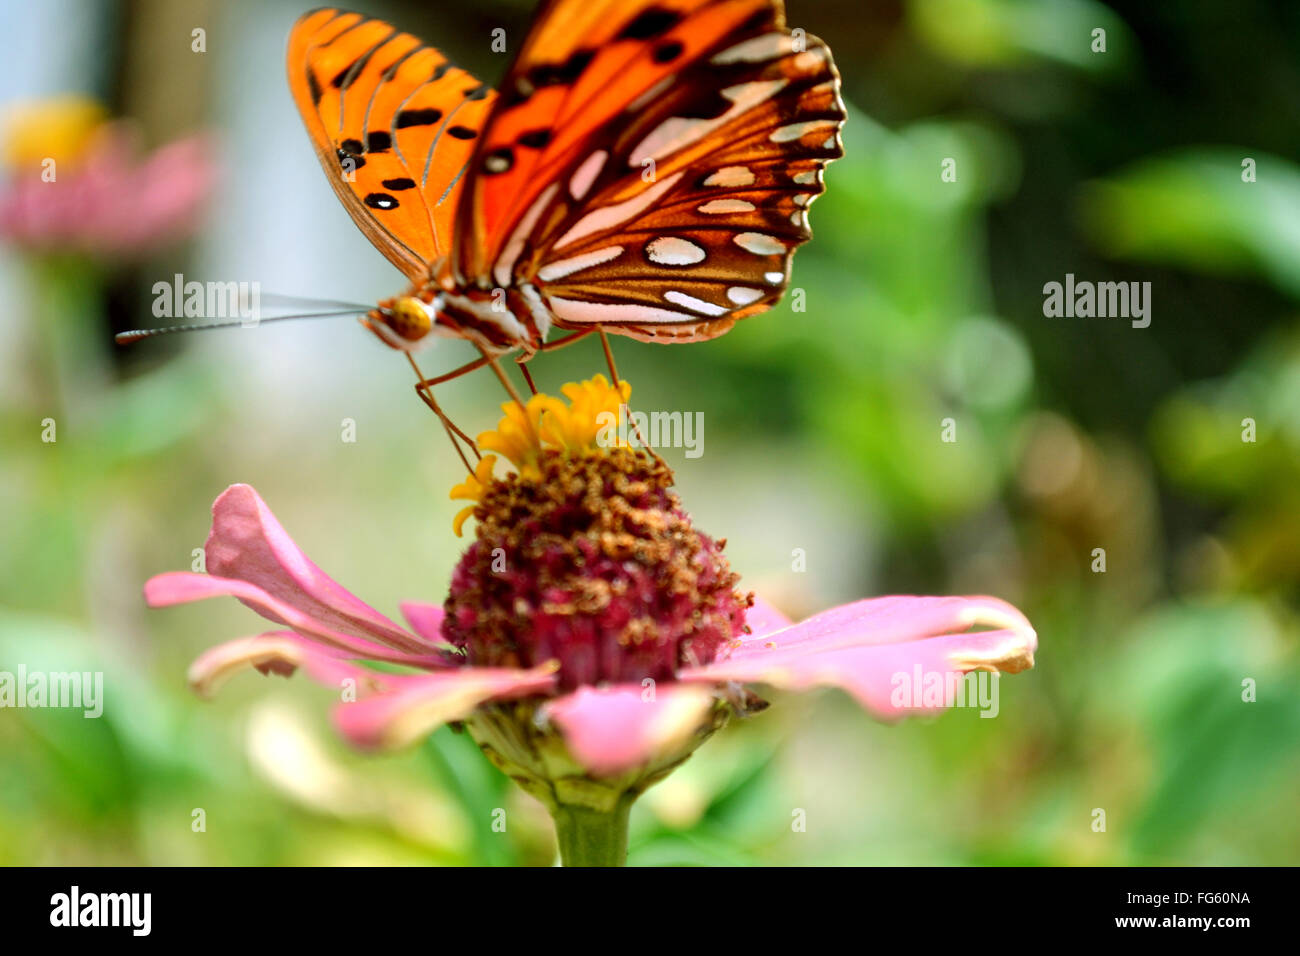 Butterfly On Flowerhead Stock Photo